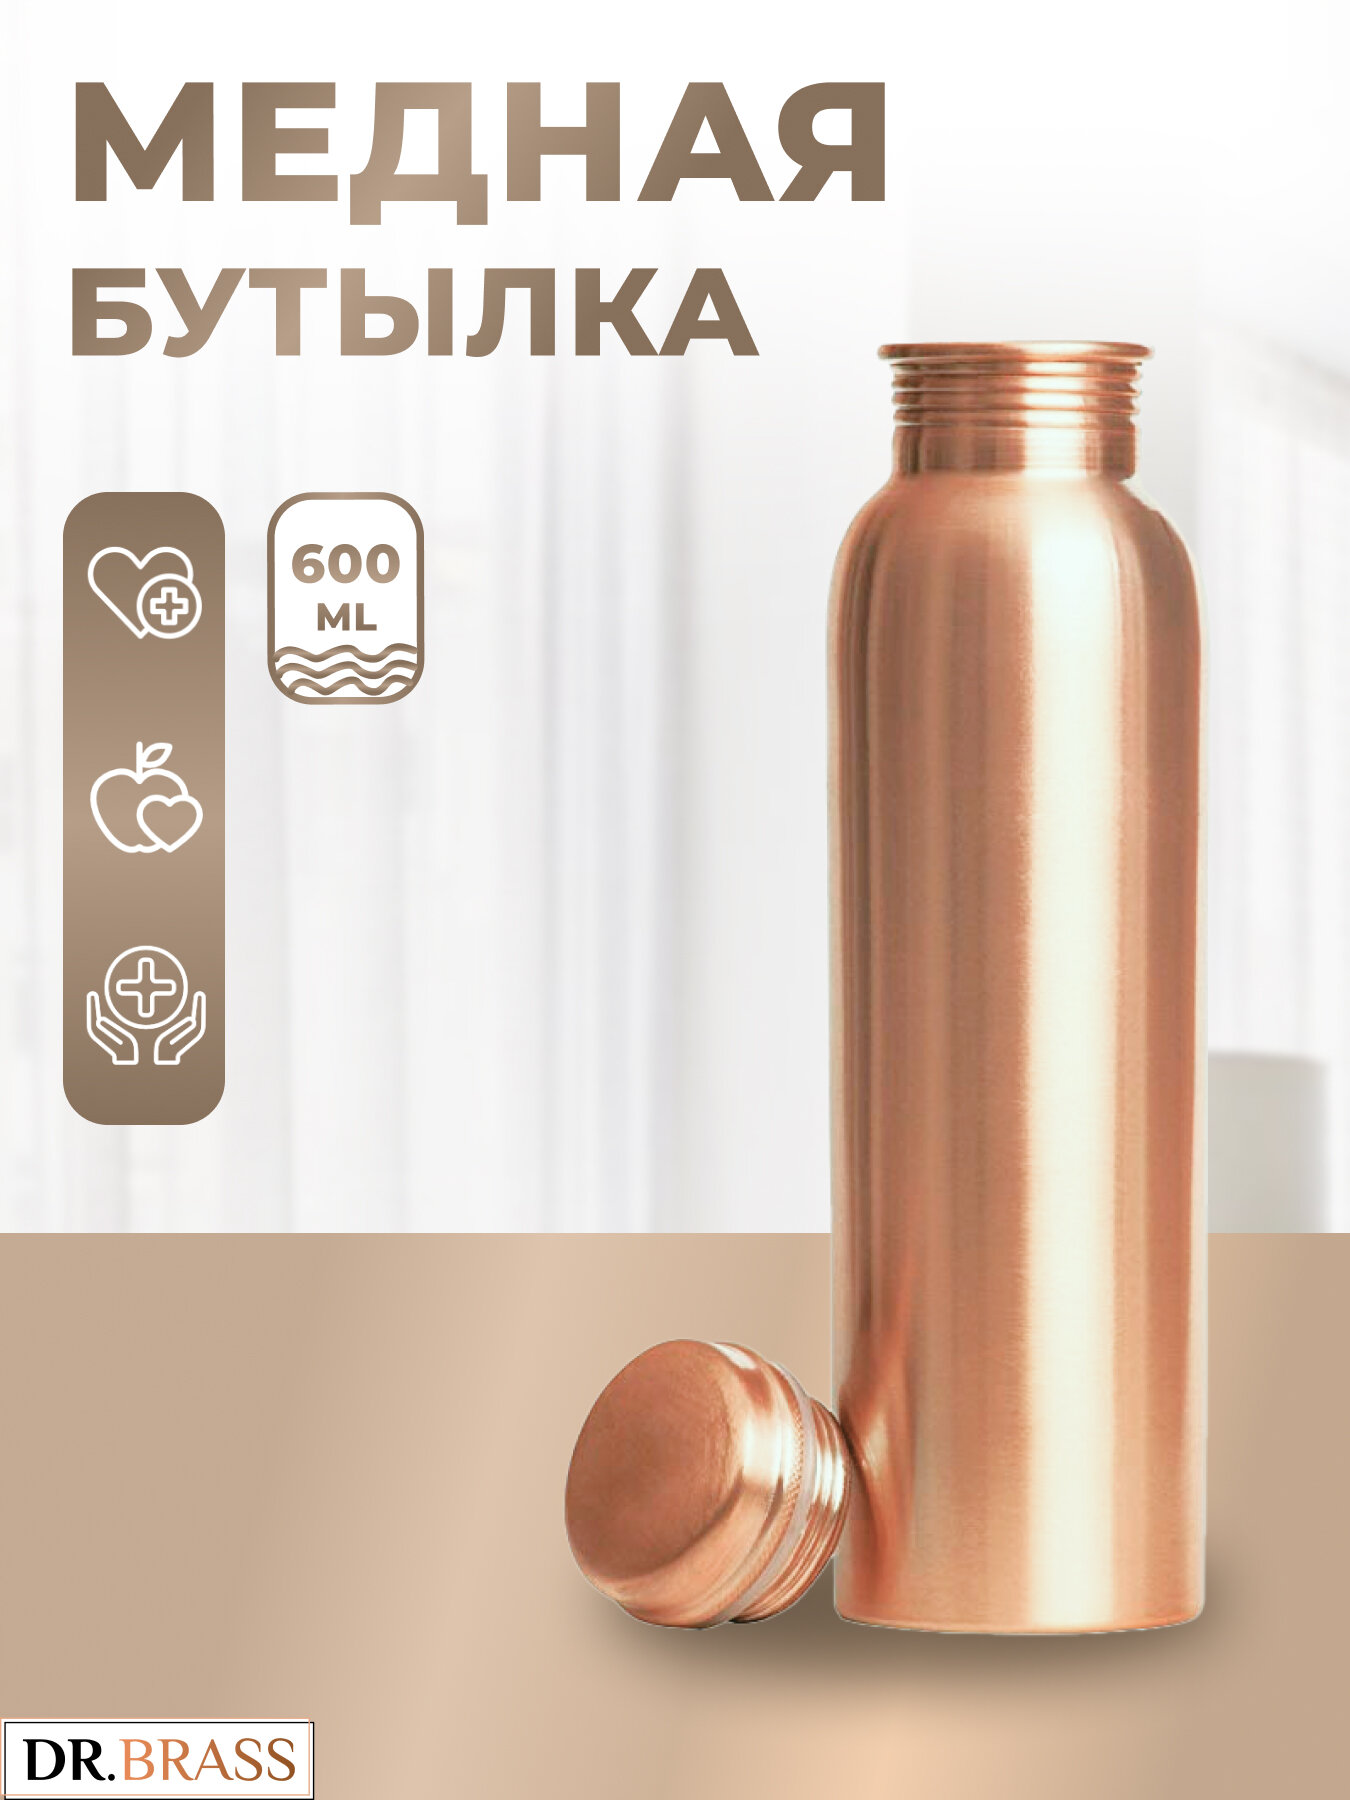 Аюрведическая медная бутылка Dr. Brass TY-M11, 600 мл. Состав металла: Медь 98,37%, Цинк 1,38%, Алюминий 0,25%